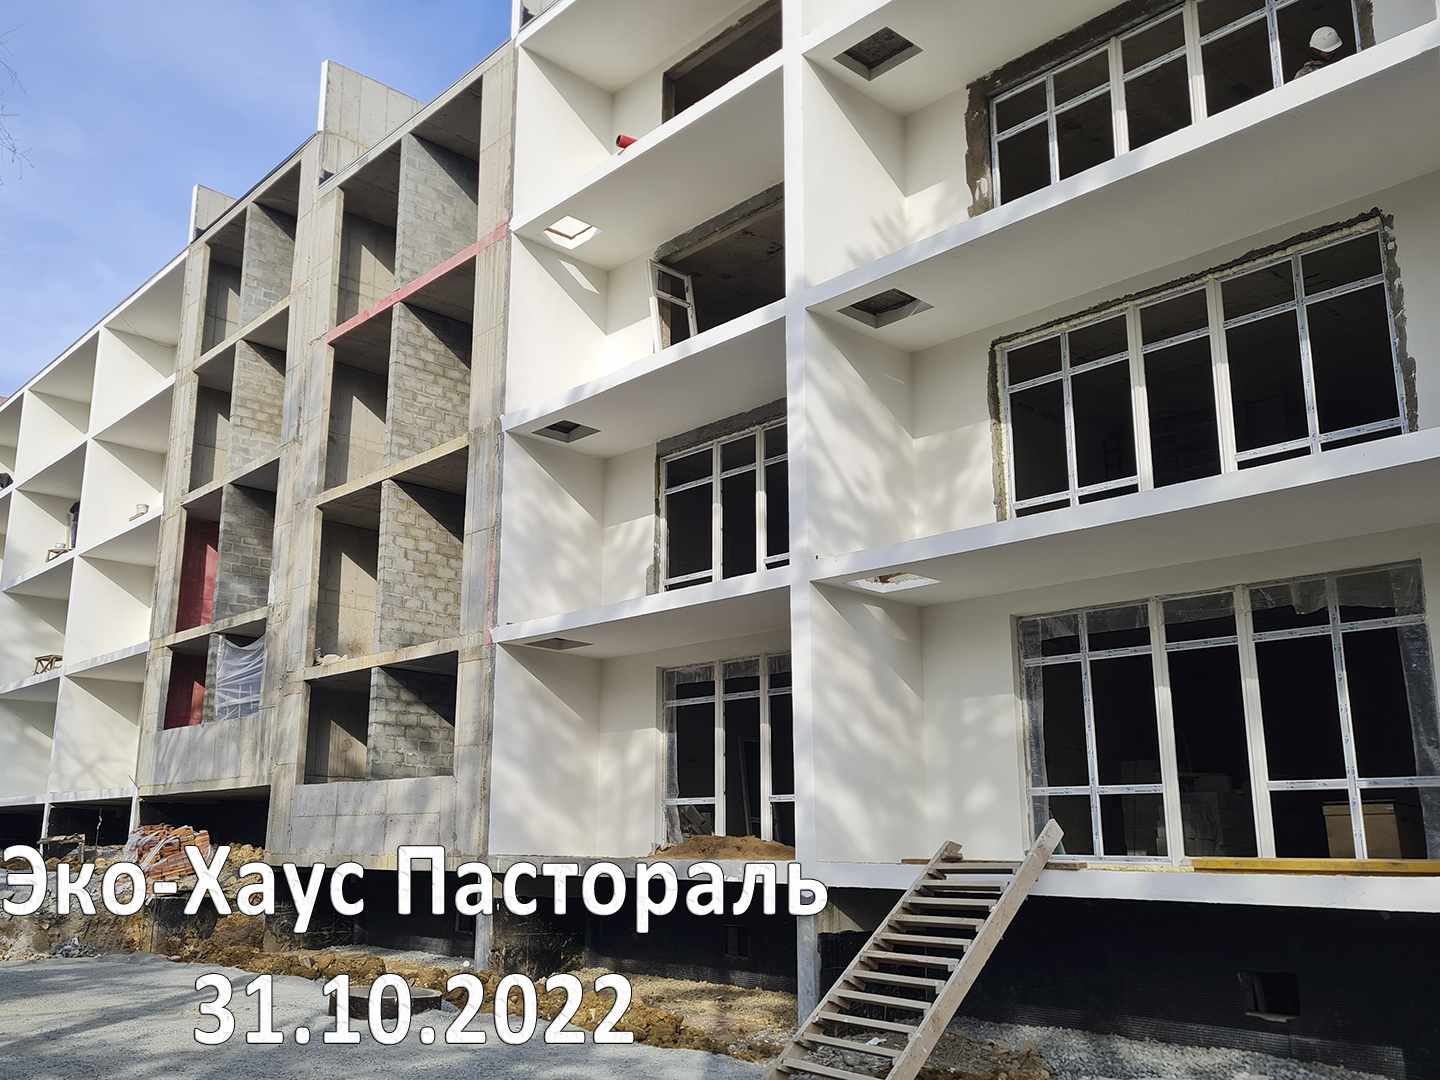 Жилой комплекс Эко-хаус Пастораль, Октябрь, 2022, фото №1